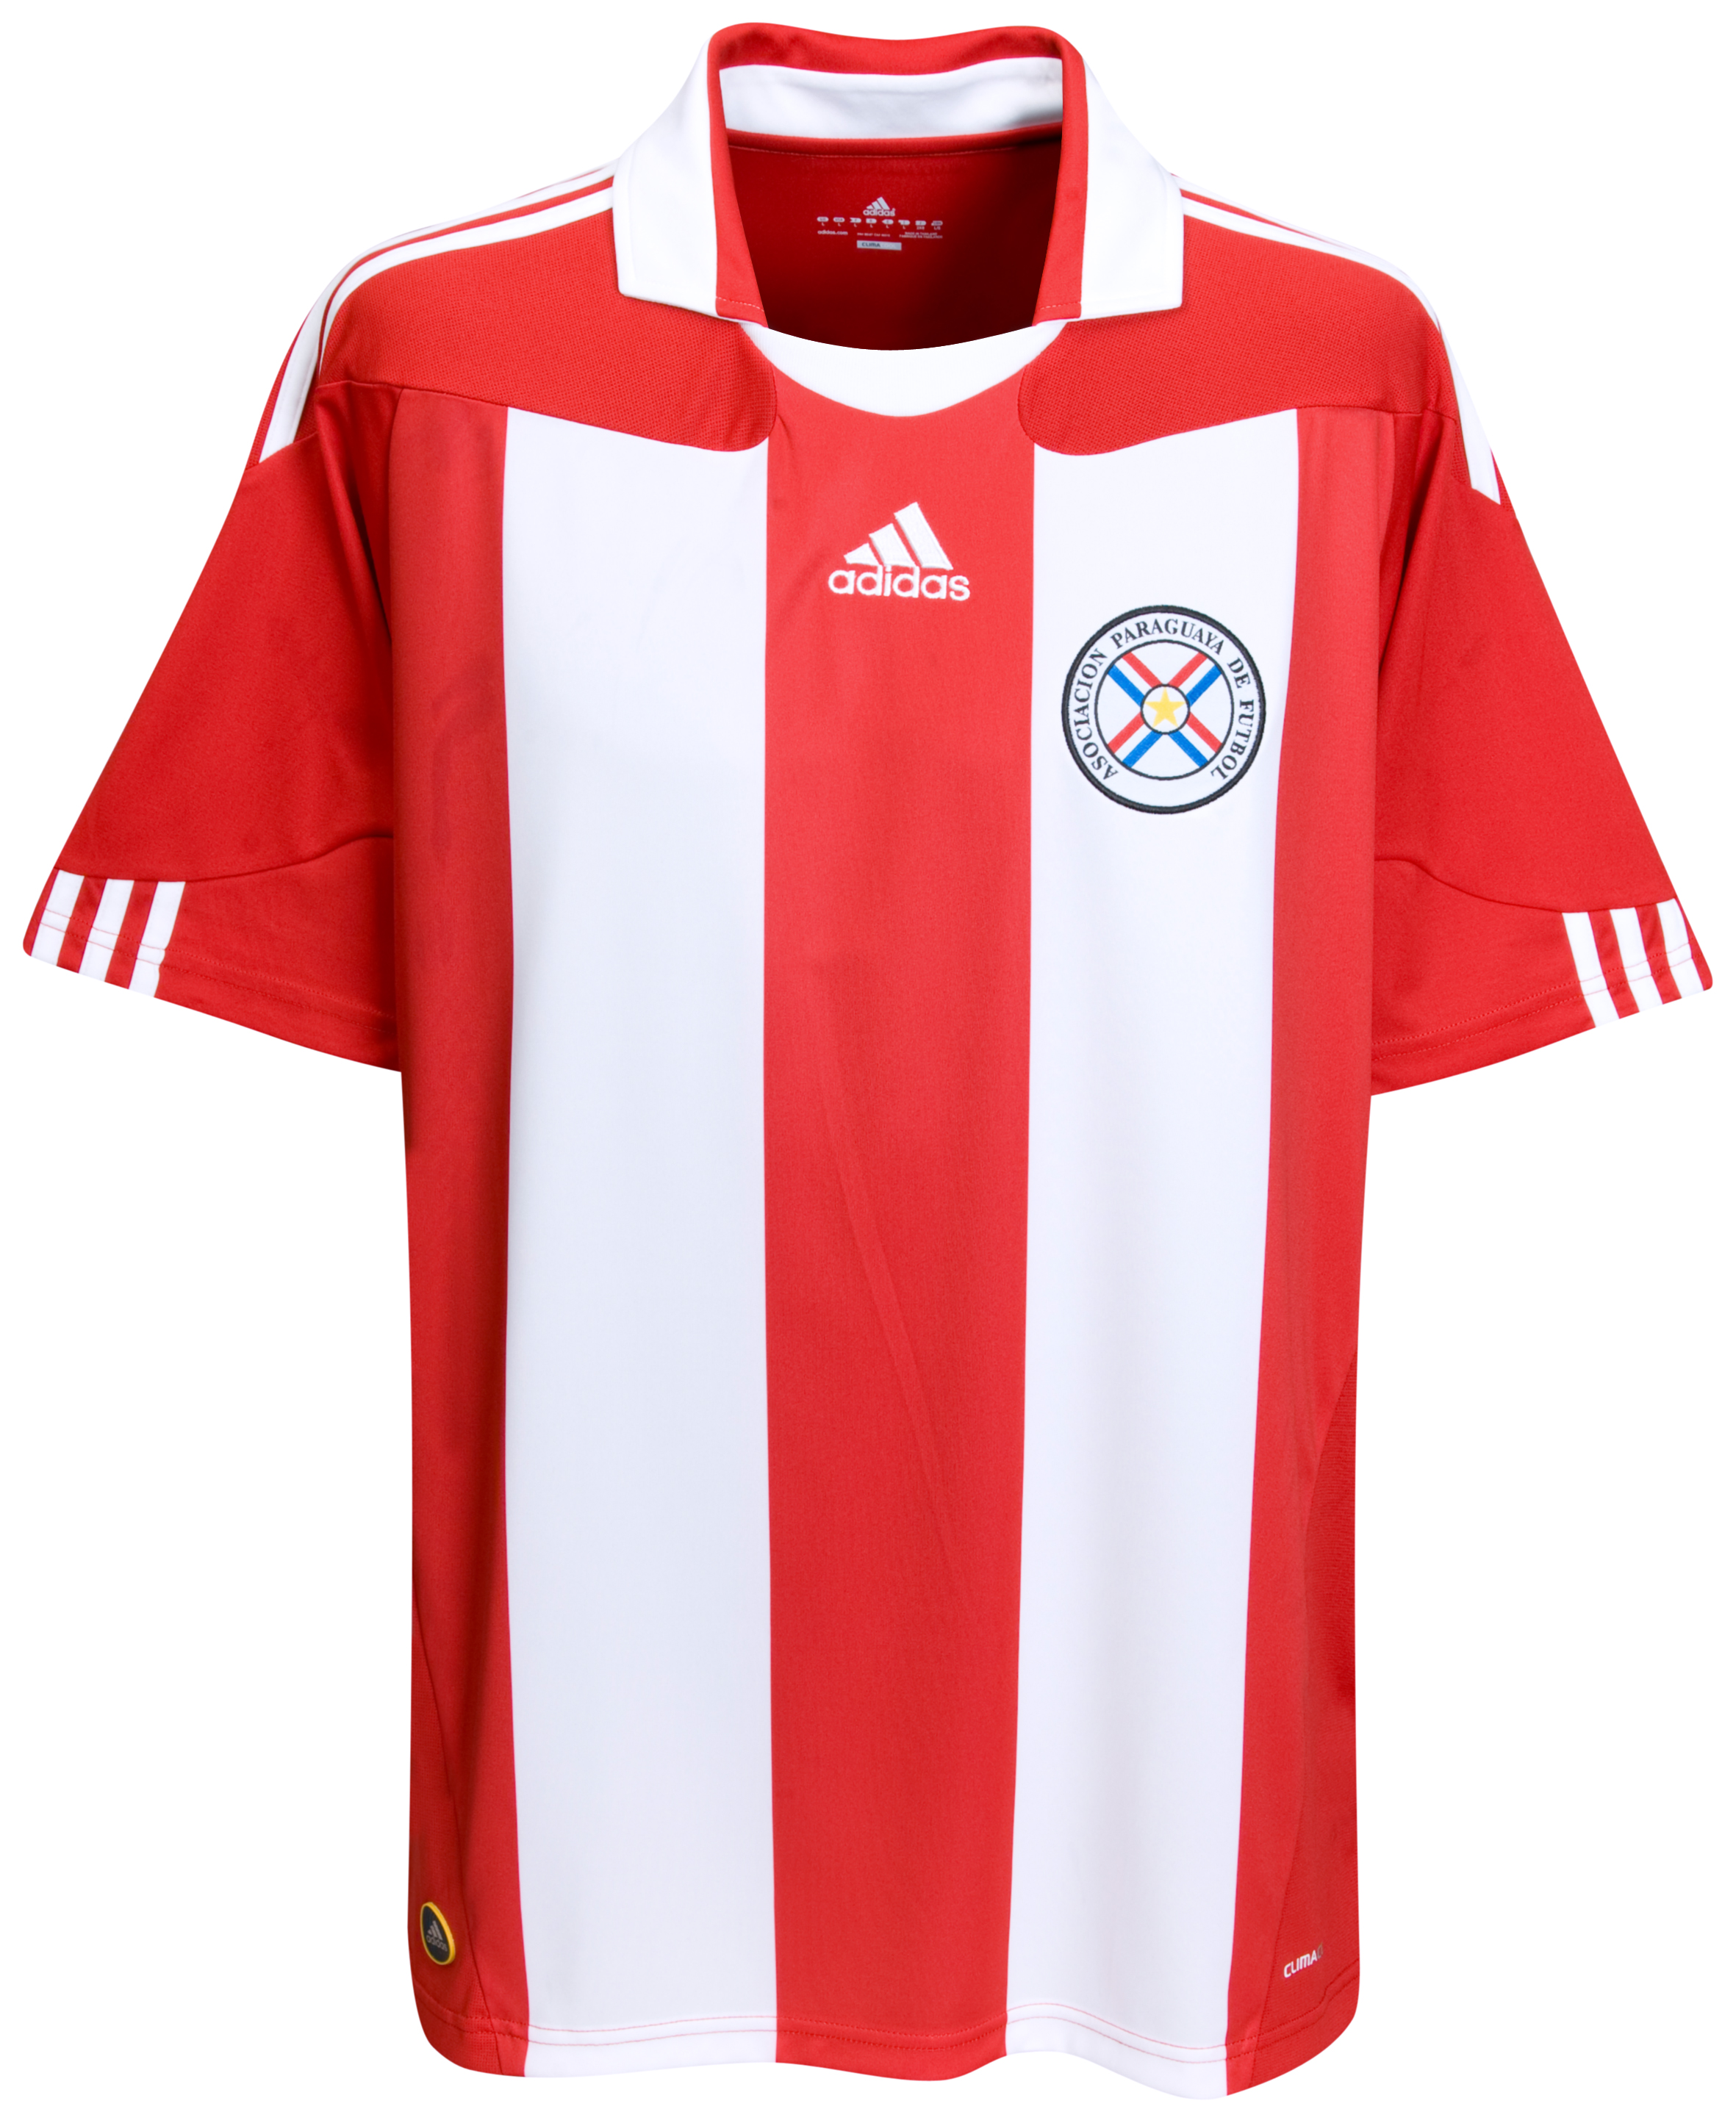 الملابس النهائيه لكأس العالم (2010)..... Kb-63747